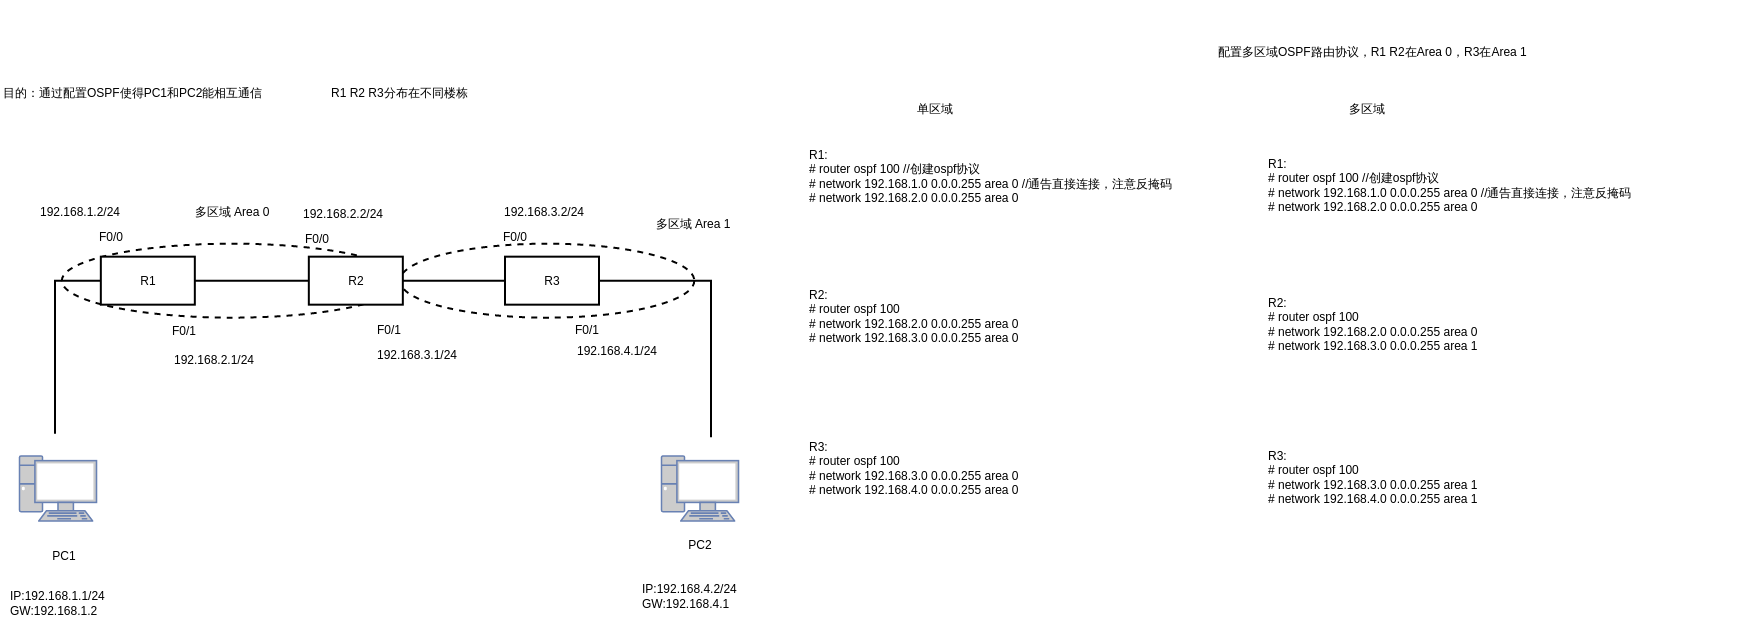 配置单区域和多区域OSPF路由协议